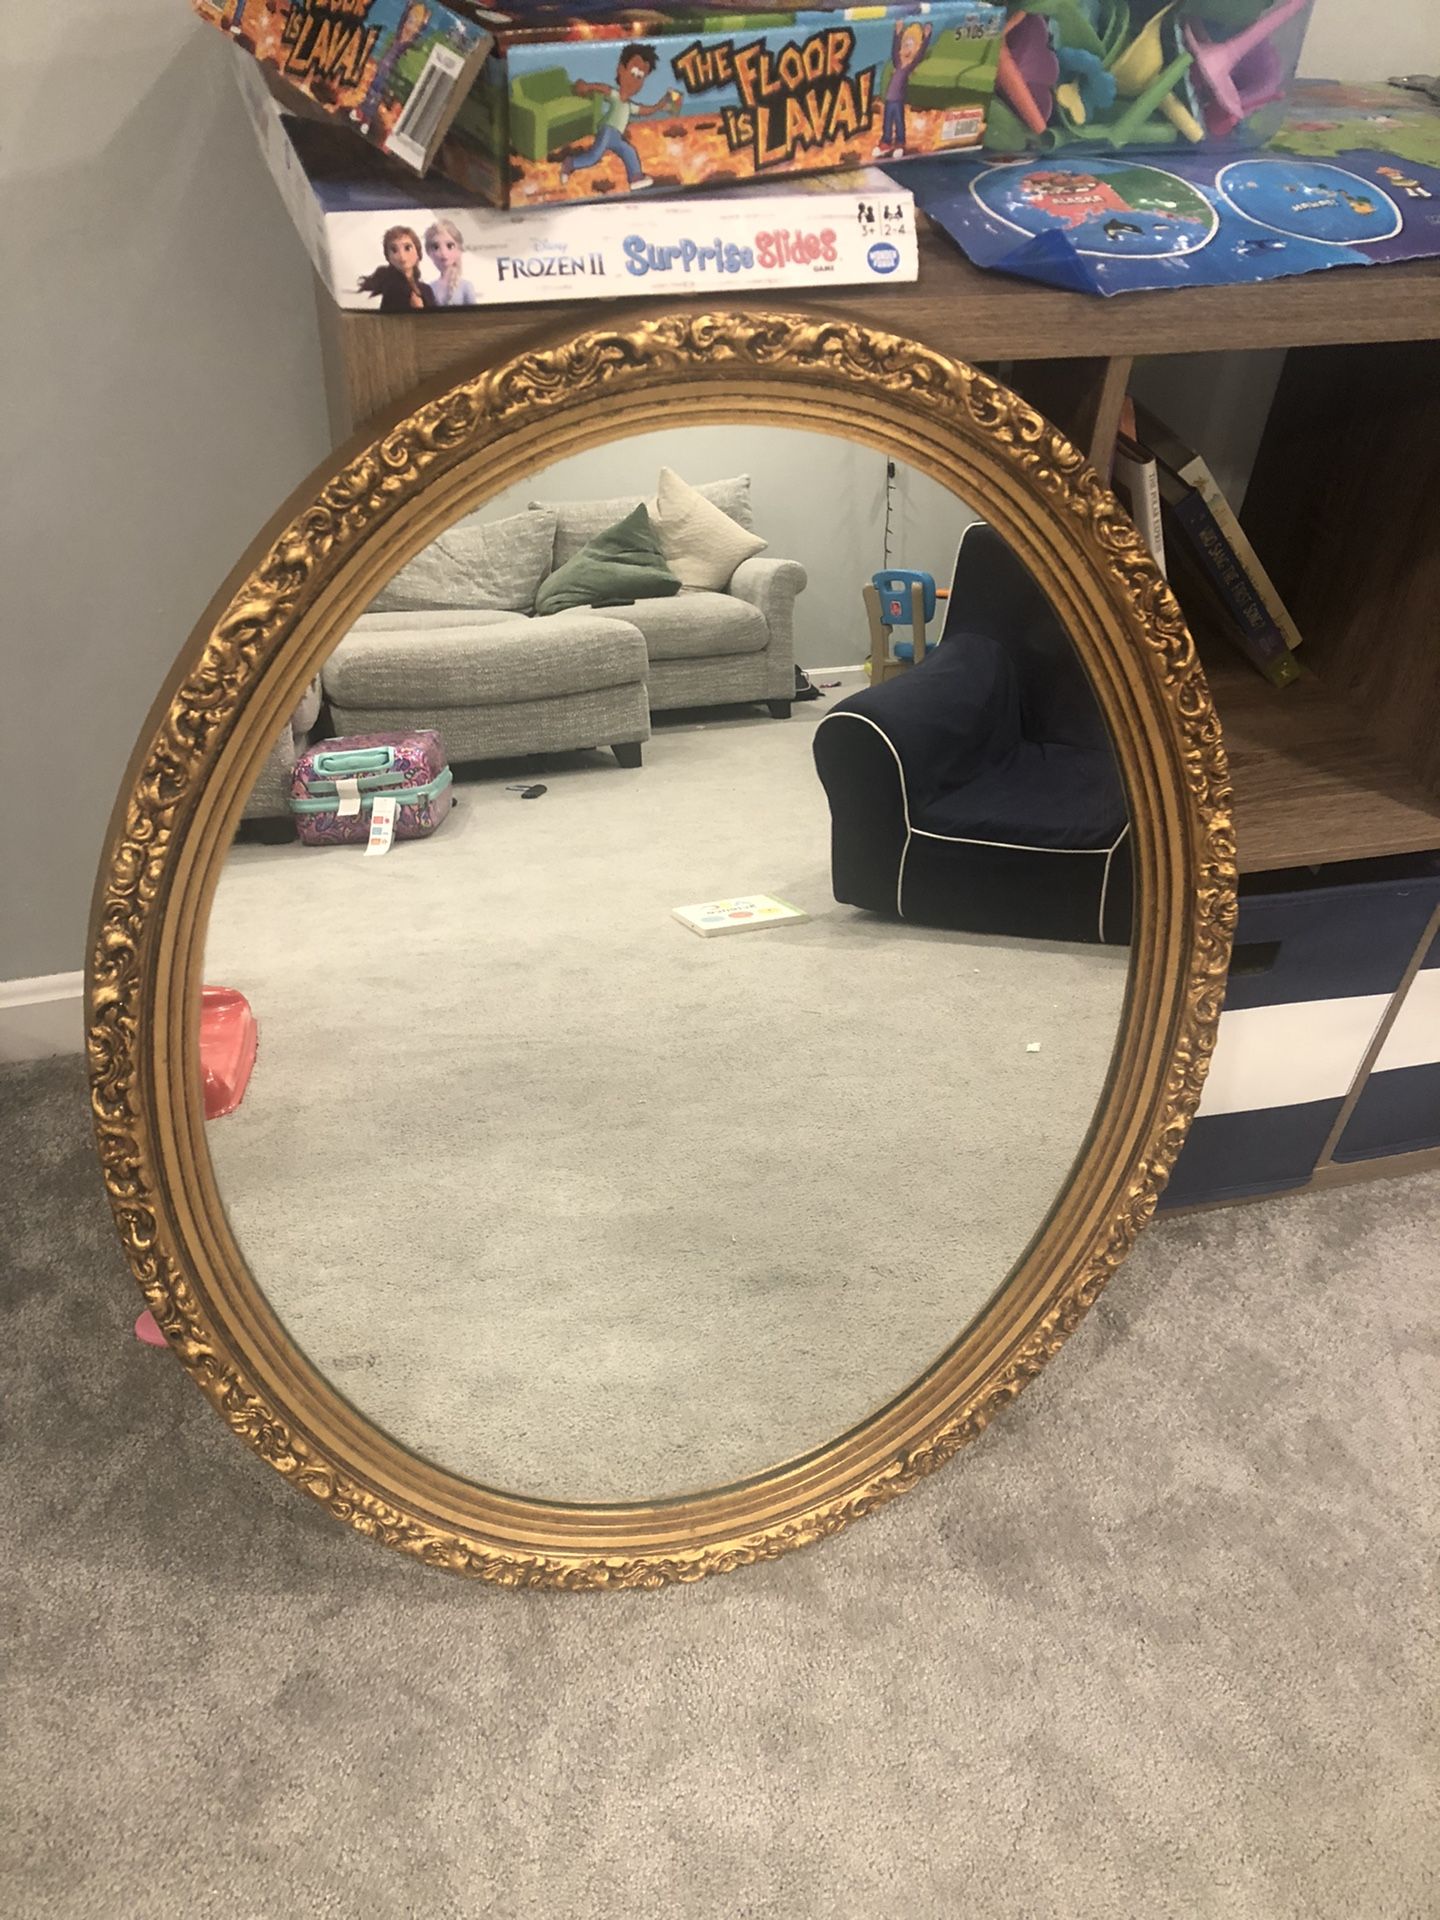 Antique Wooden Mirror 